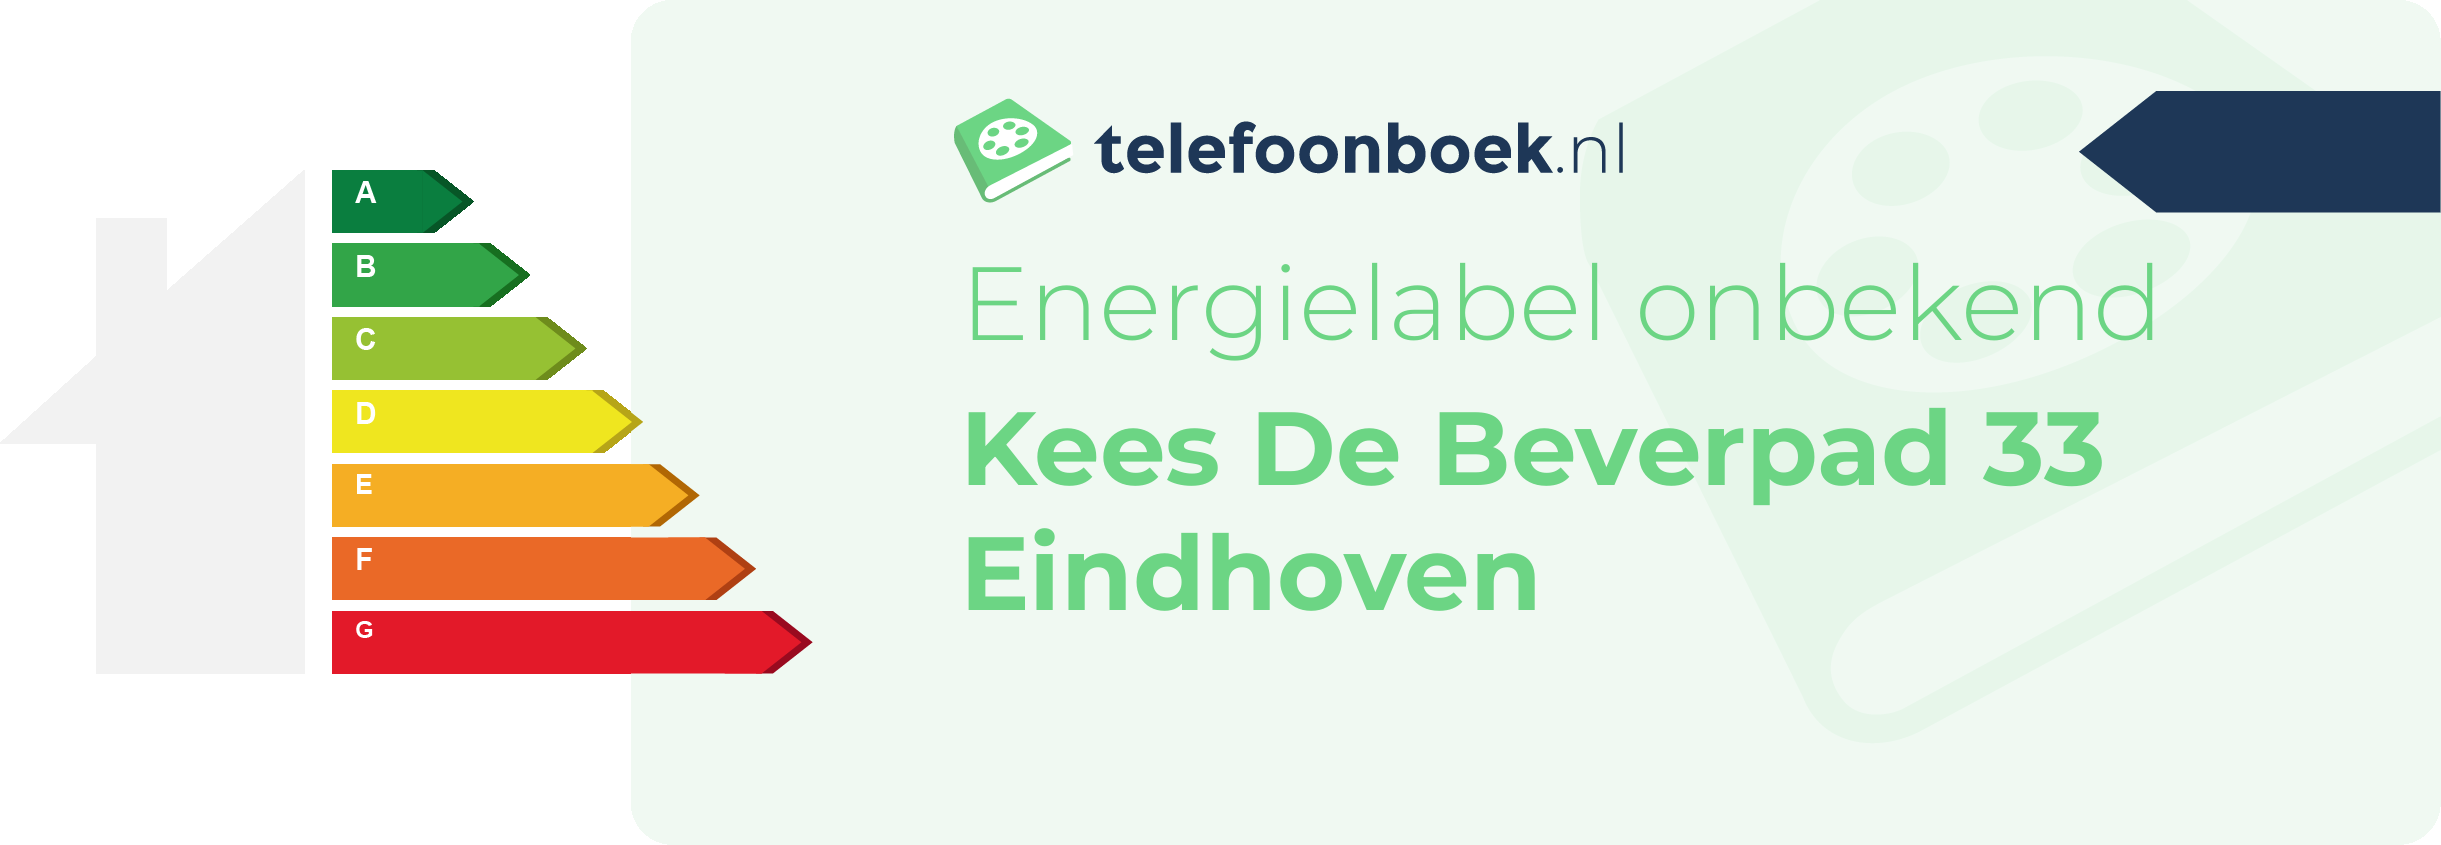 Energielabel Kees De Beverpad 33 Eindhoven